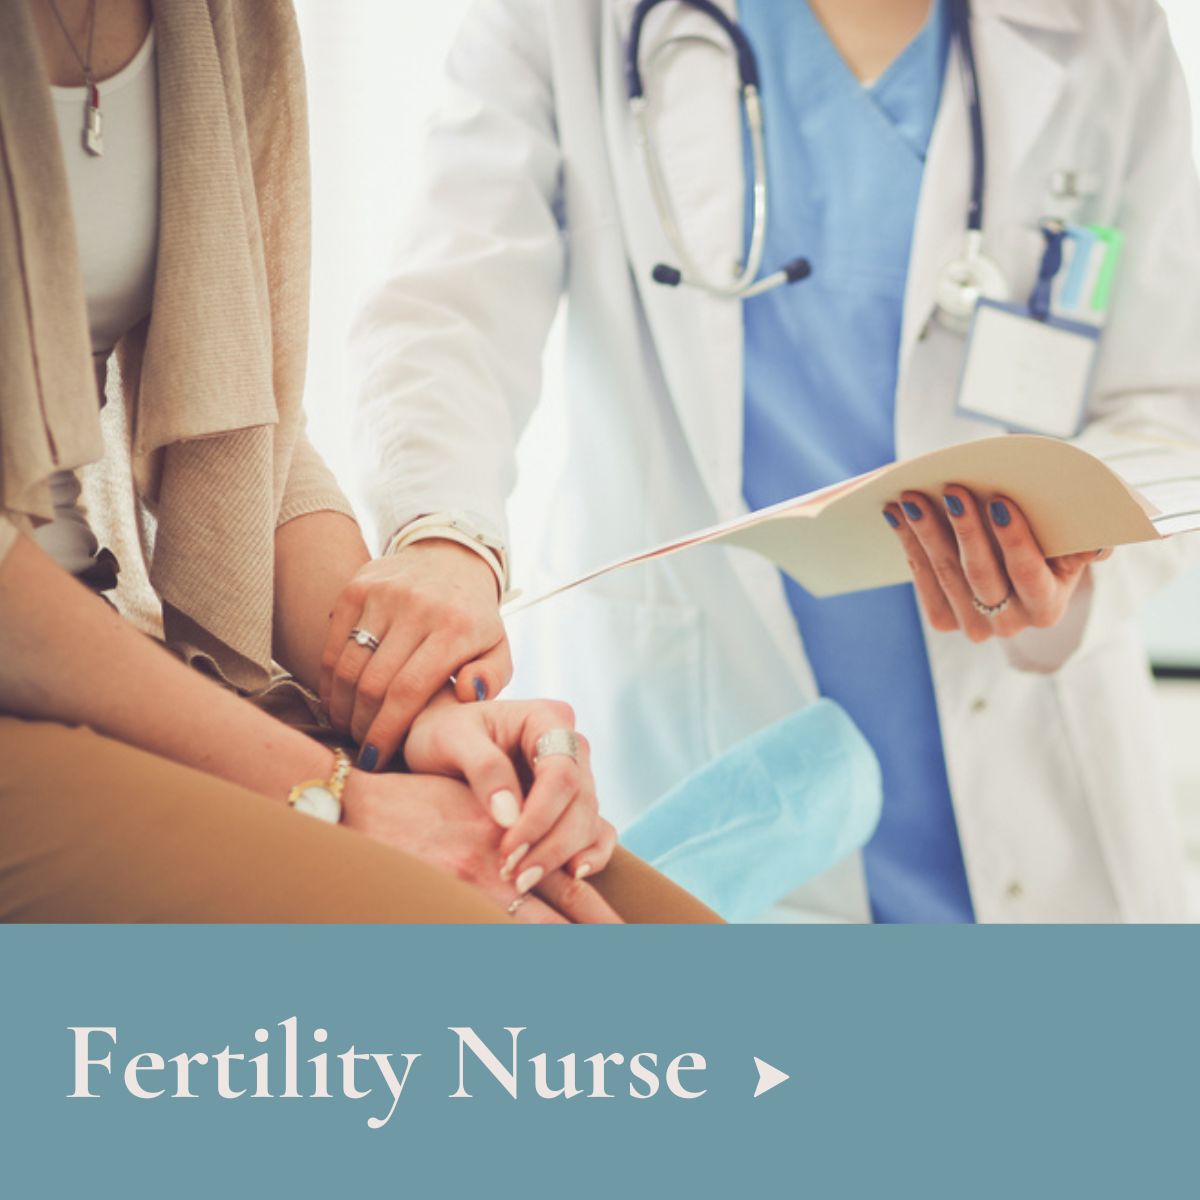 Fertility Nurse Job at Fertility Clinic